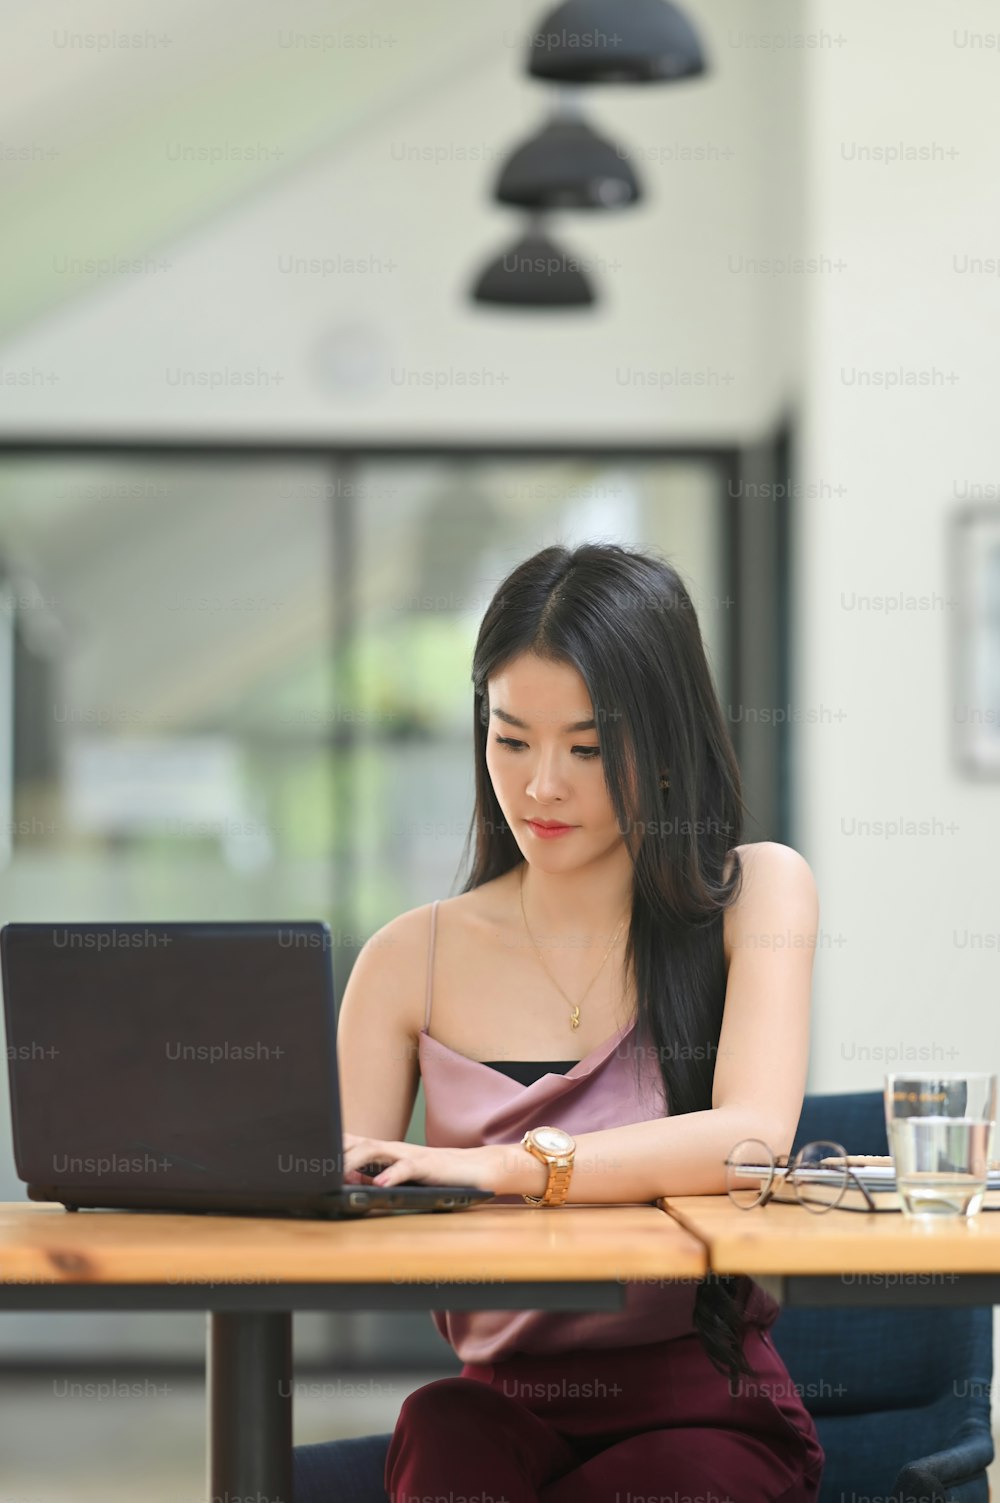 Eine Frau arbeitet mit einem Computer-Laptop, während sie am hölzernen Schreibtisch sitzt.